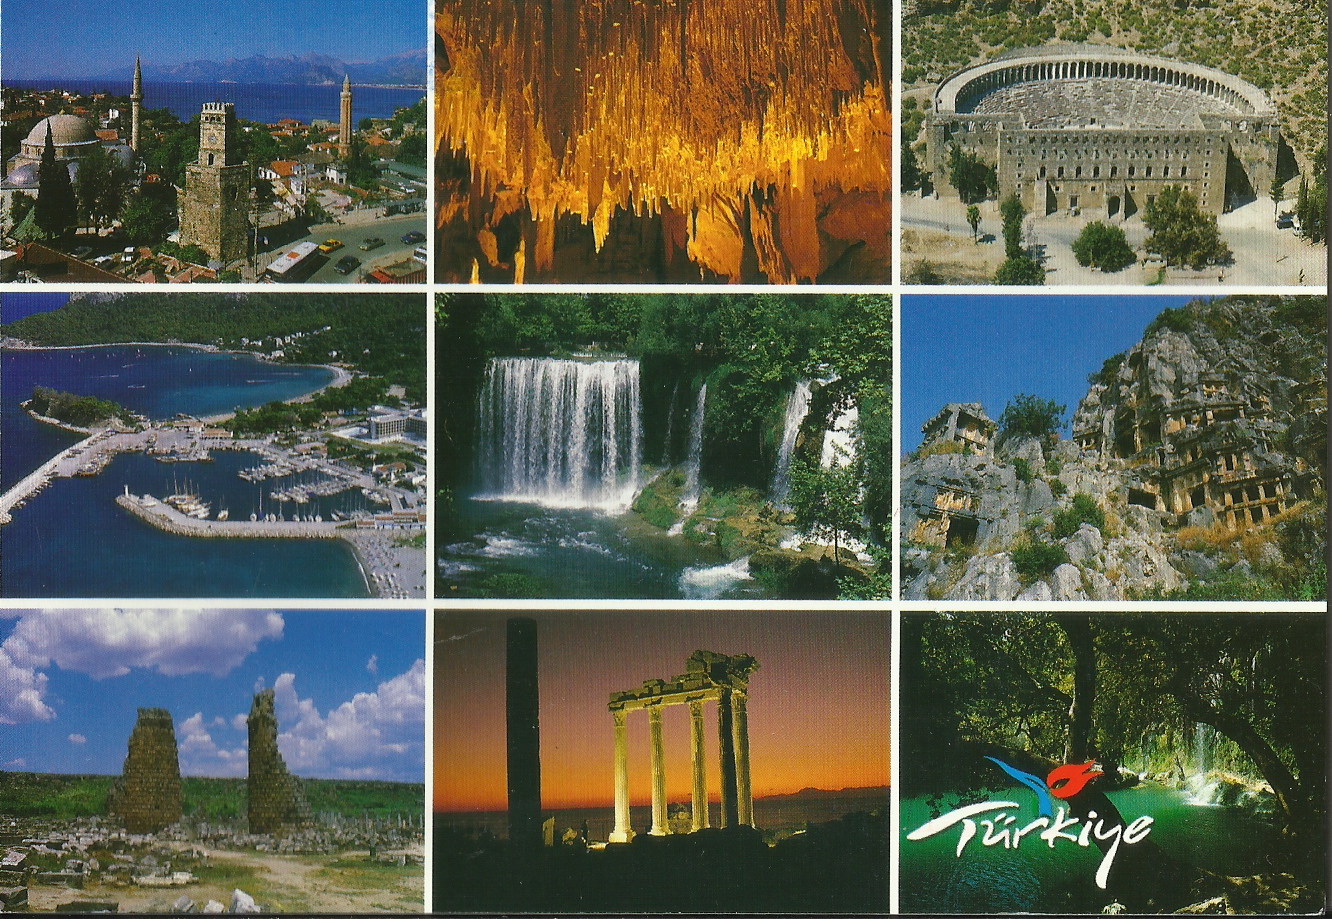 Pošalji mi razglednicu, neću SMS, po azbuci - Page 18 Postcards3_21